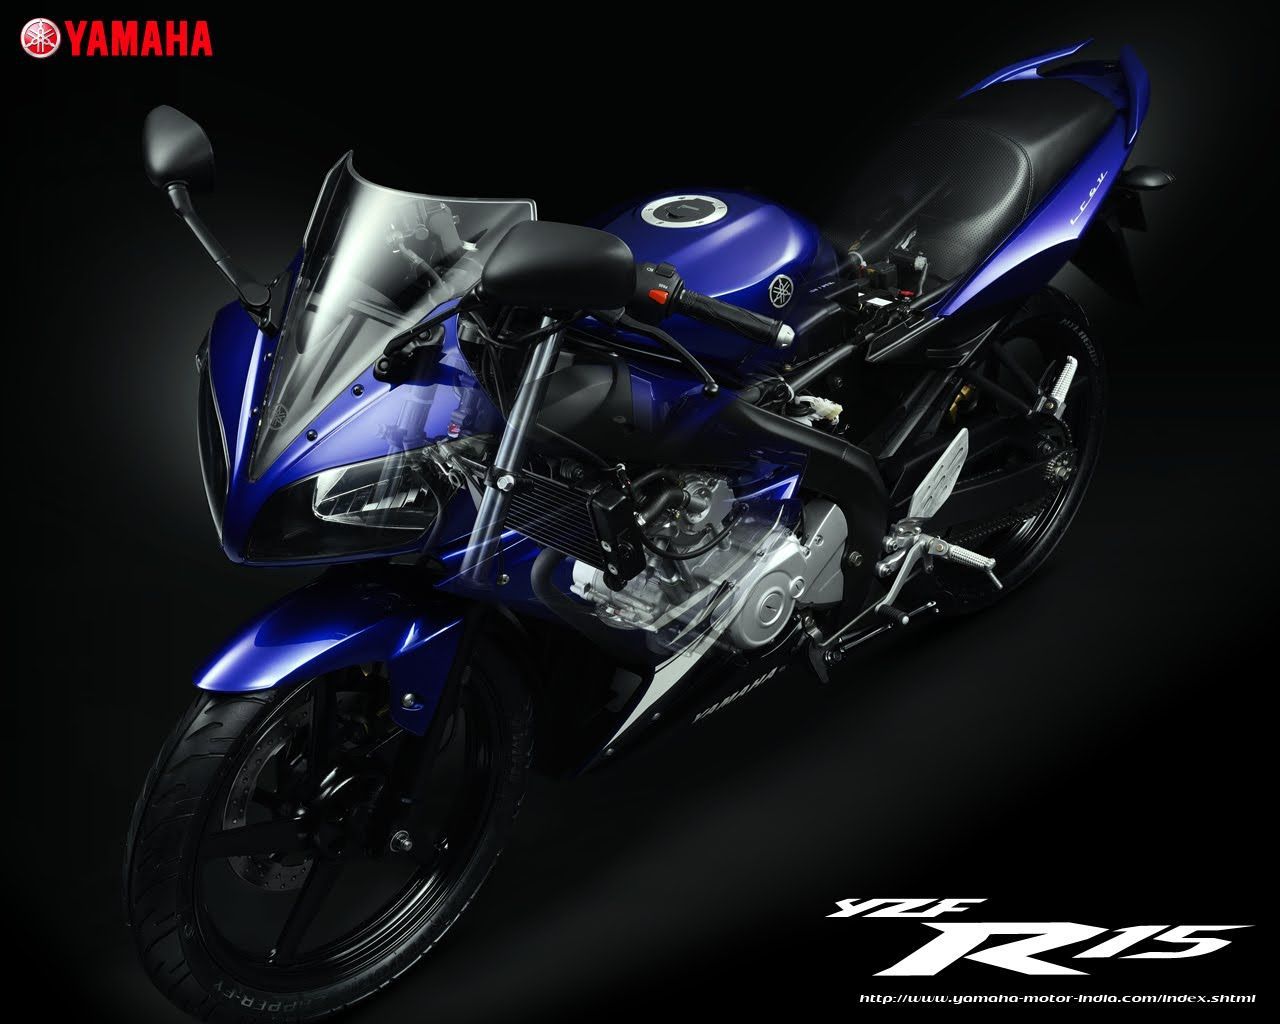 Yamaha Yzf-R15 Wallpapers